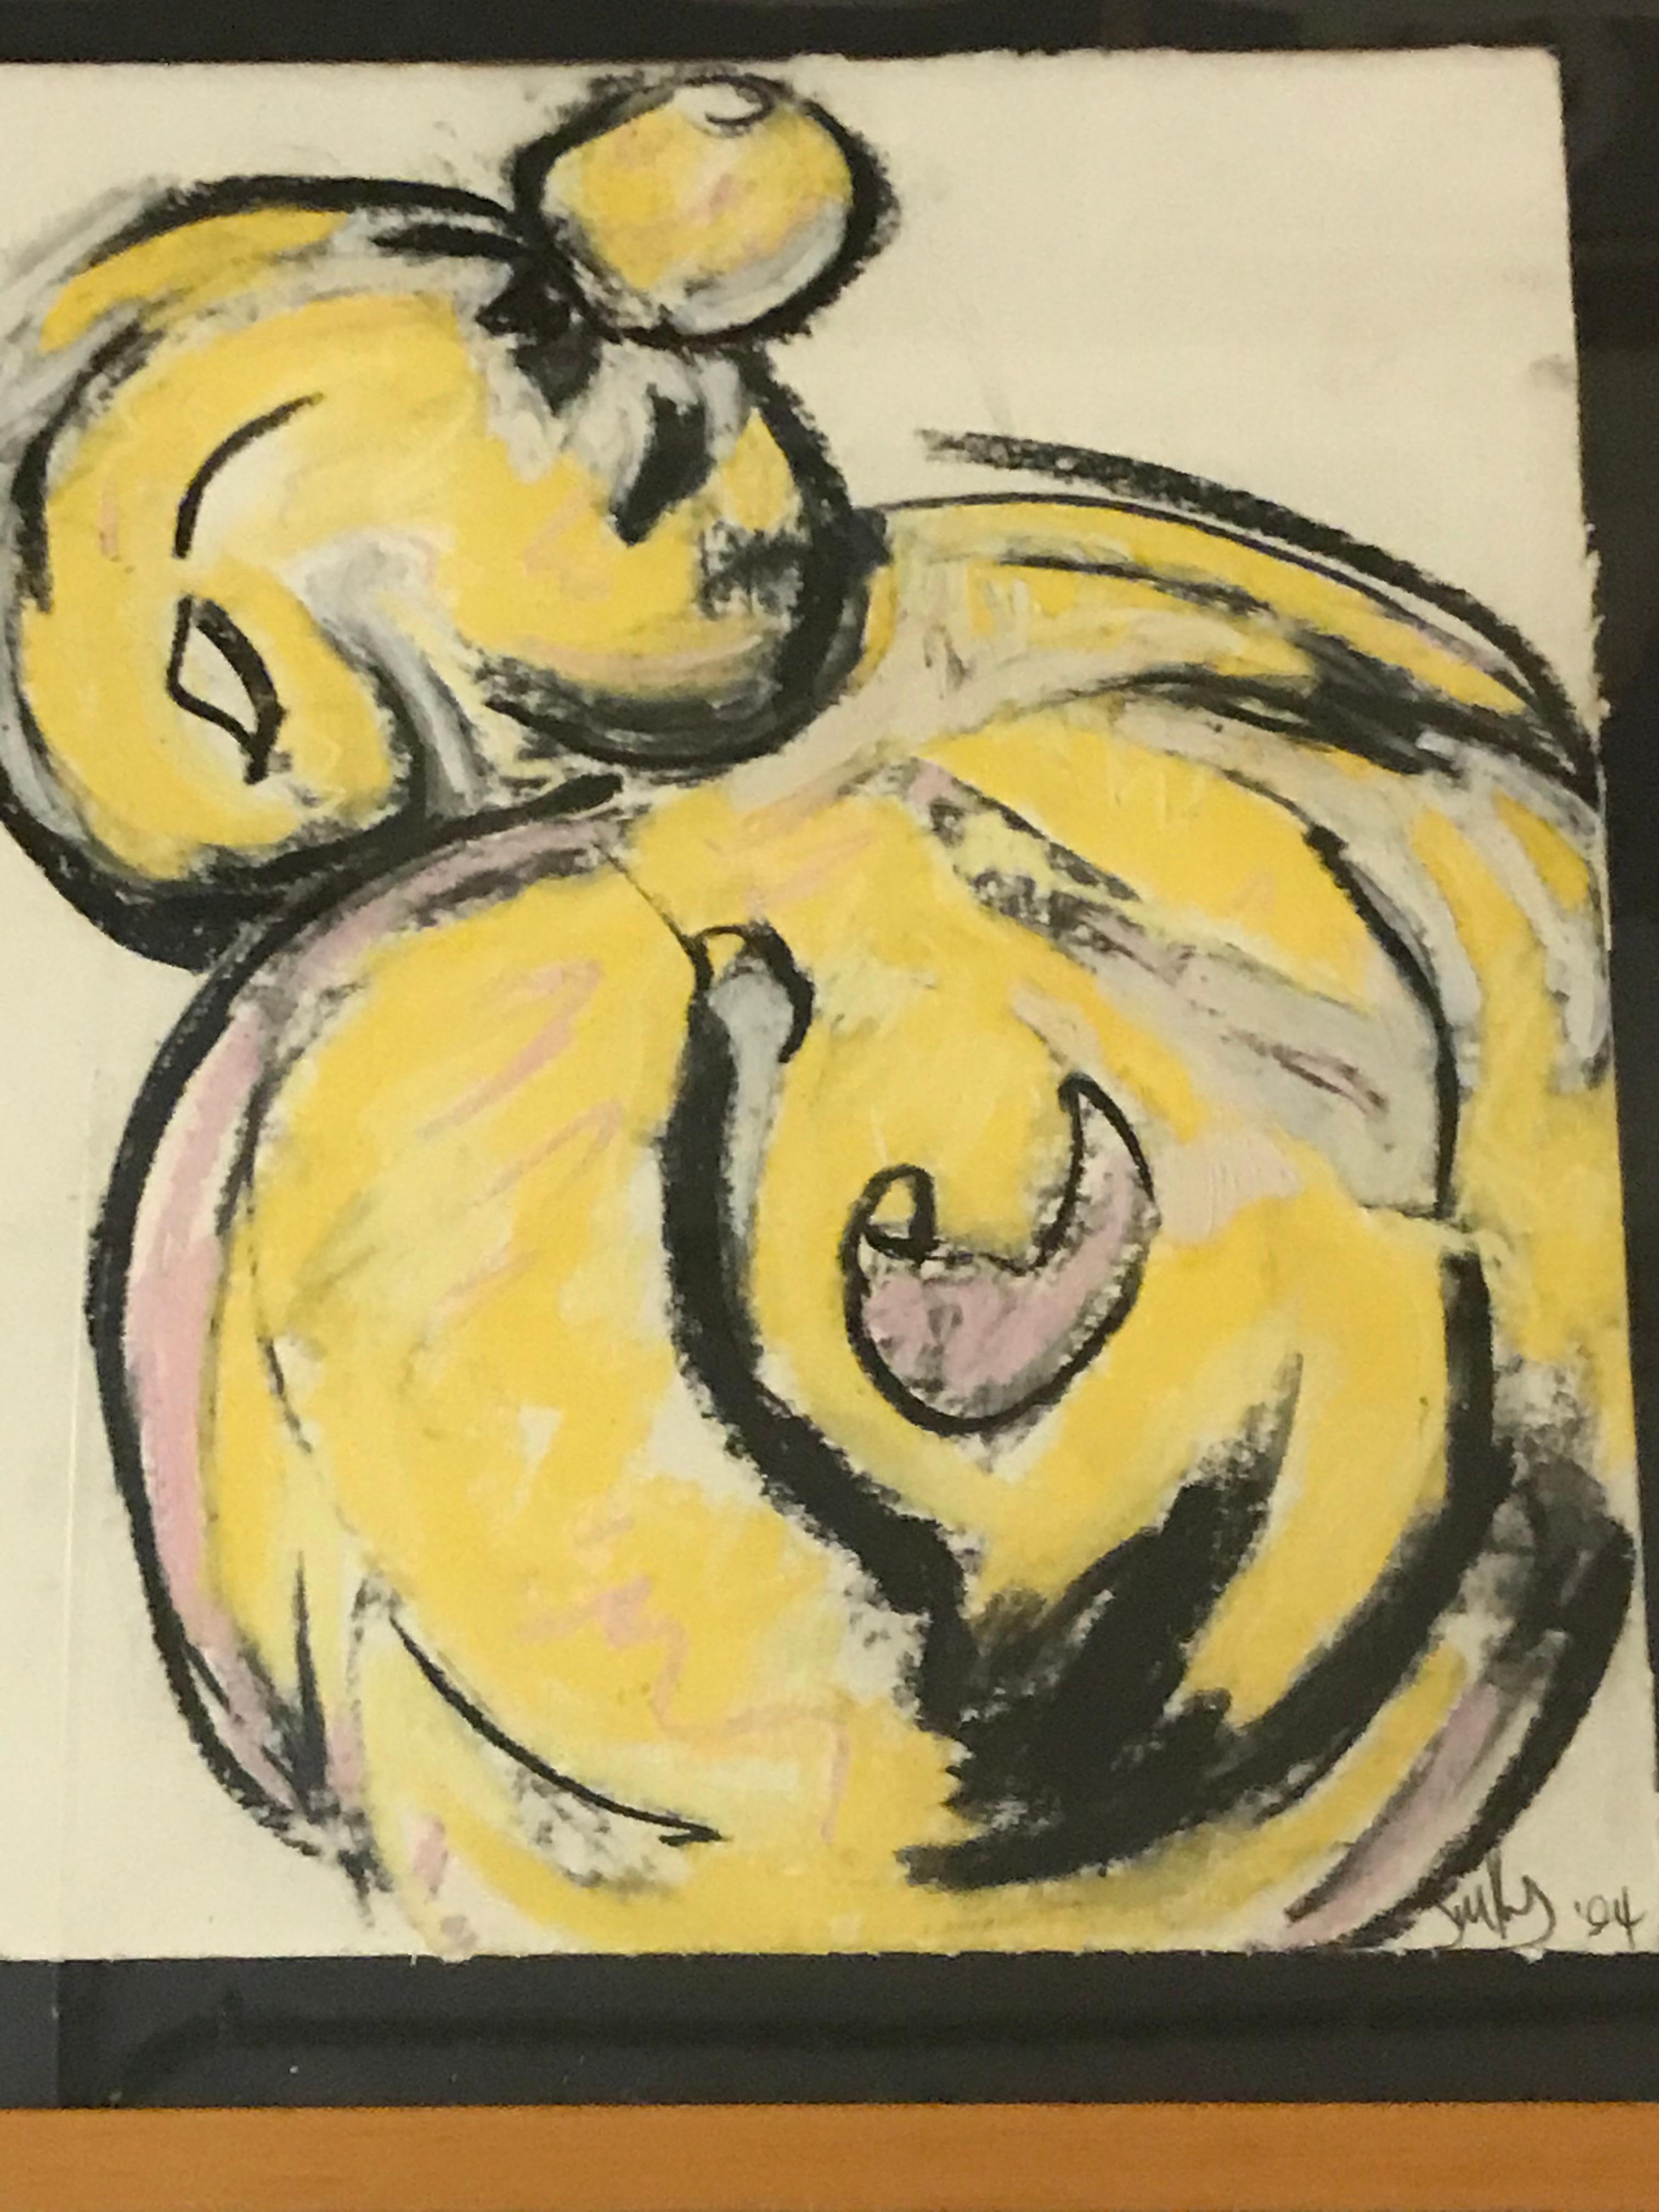 Dieses Kunstwerk ist von Jim Kras signiert und auf 1994 datiert.
Der Künstler benutzte Ölpastellkreide, um eine gelbe, weinende Figur darzustellen, die mit geschwungenen langen schwarzen Linien skizziert ist.
 